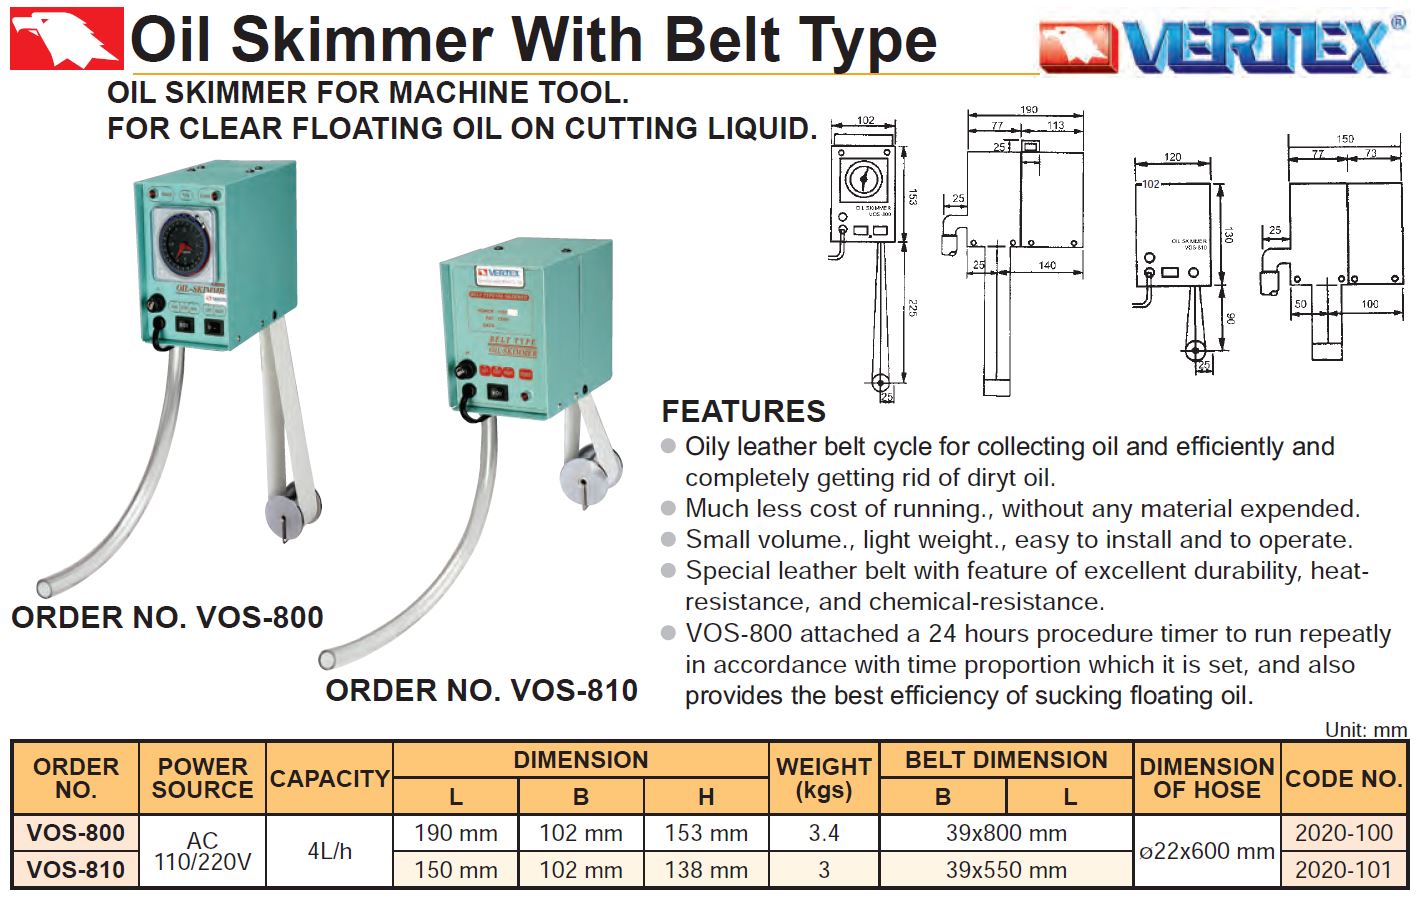 Oil Skimmer With Belt Type Vertex VOS-800